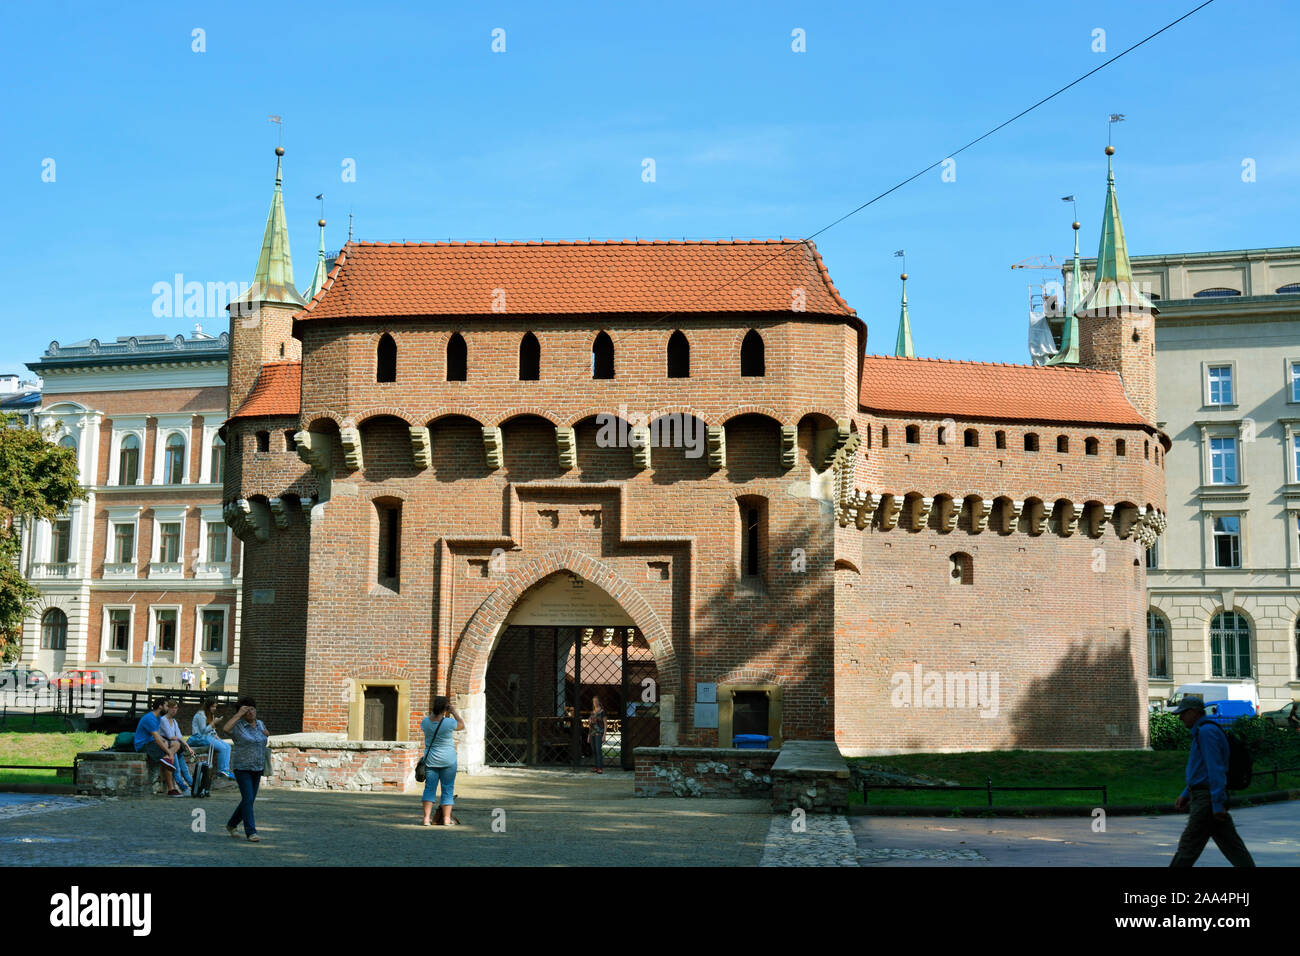 La barbacane de Cracovie de style gothique, datant de 1498, est l'un des rares qui subsistent encore en Europe, et c'est le mieux préservé d'être un monde de l'Unesco Banque D'Images